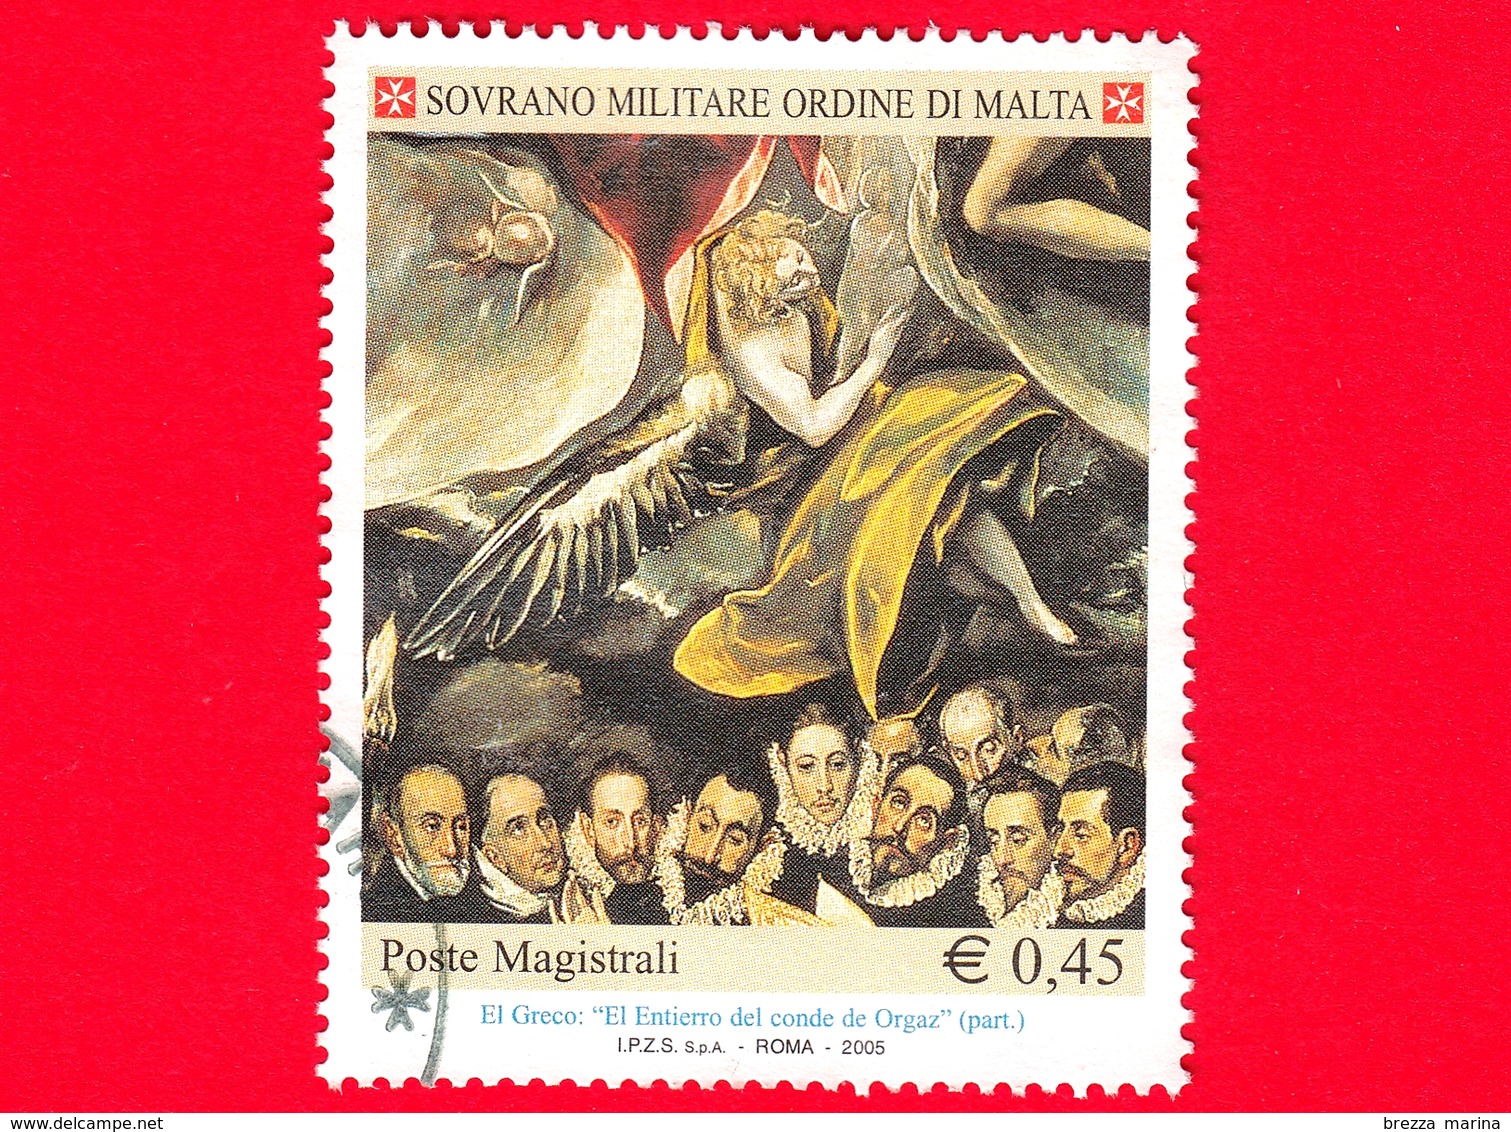 SMOM - Sovrano Militare Ordine Di Malta - Usato - 2005 - 'El Entierro Del Conde De Orgaz' Di El Greco - Particolare Dell - Sovrano Militare Ordine Di Malta